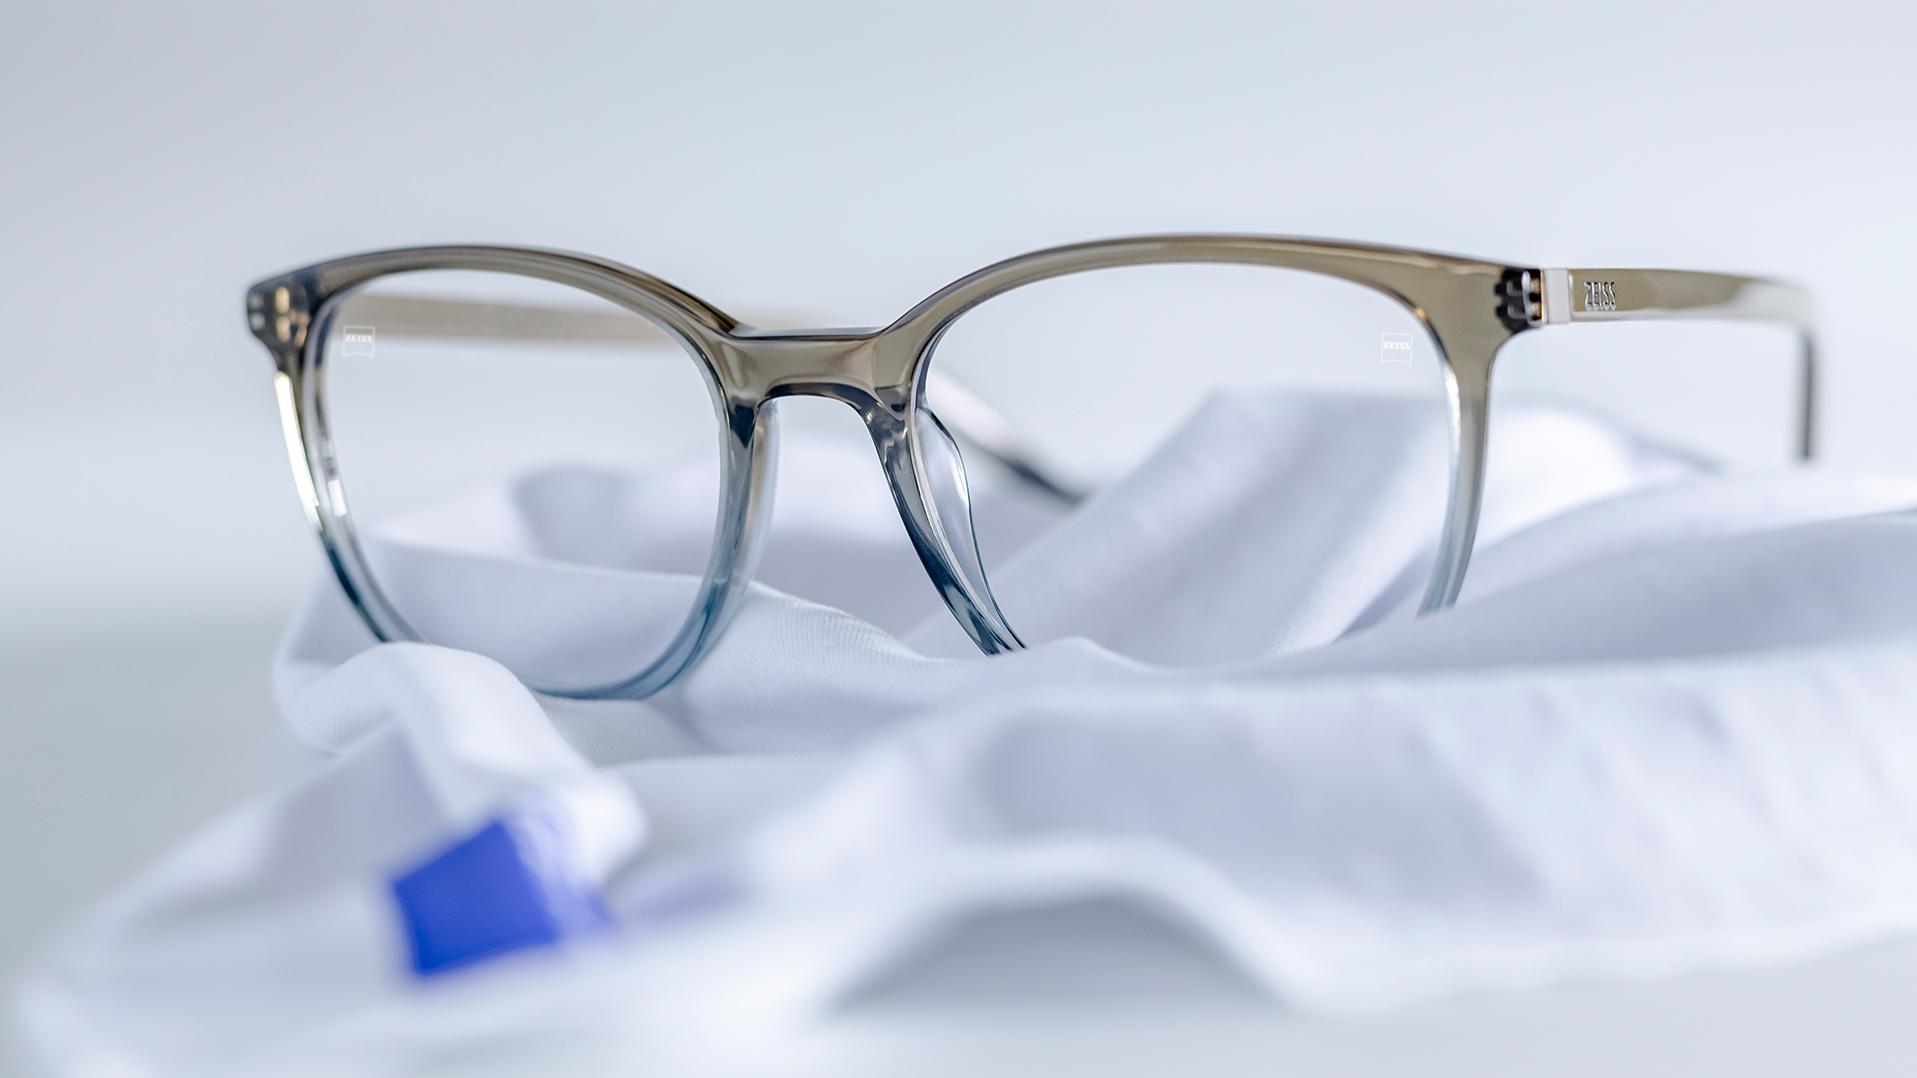 Eine Brille mit grau-blauer Fassung und ZEISS Brillengläsern mit DuraVision® Beschichtung liegt auf einem weißen Mikrofasertuch.